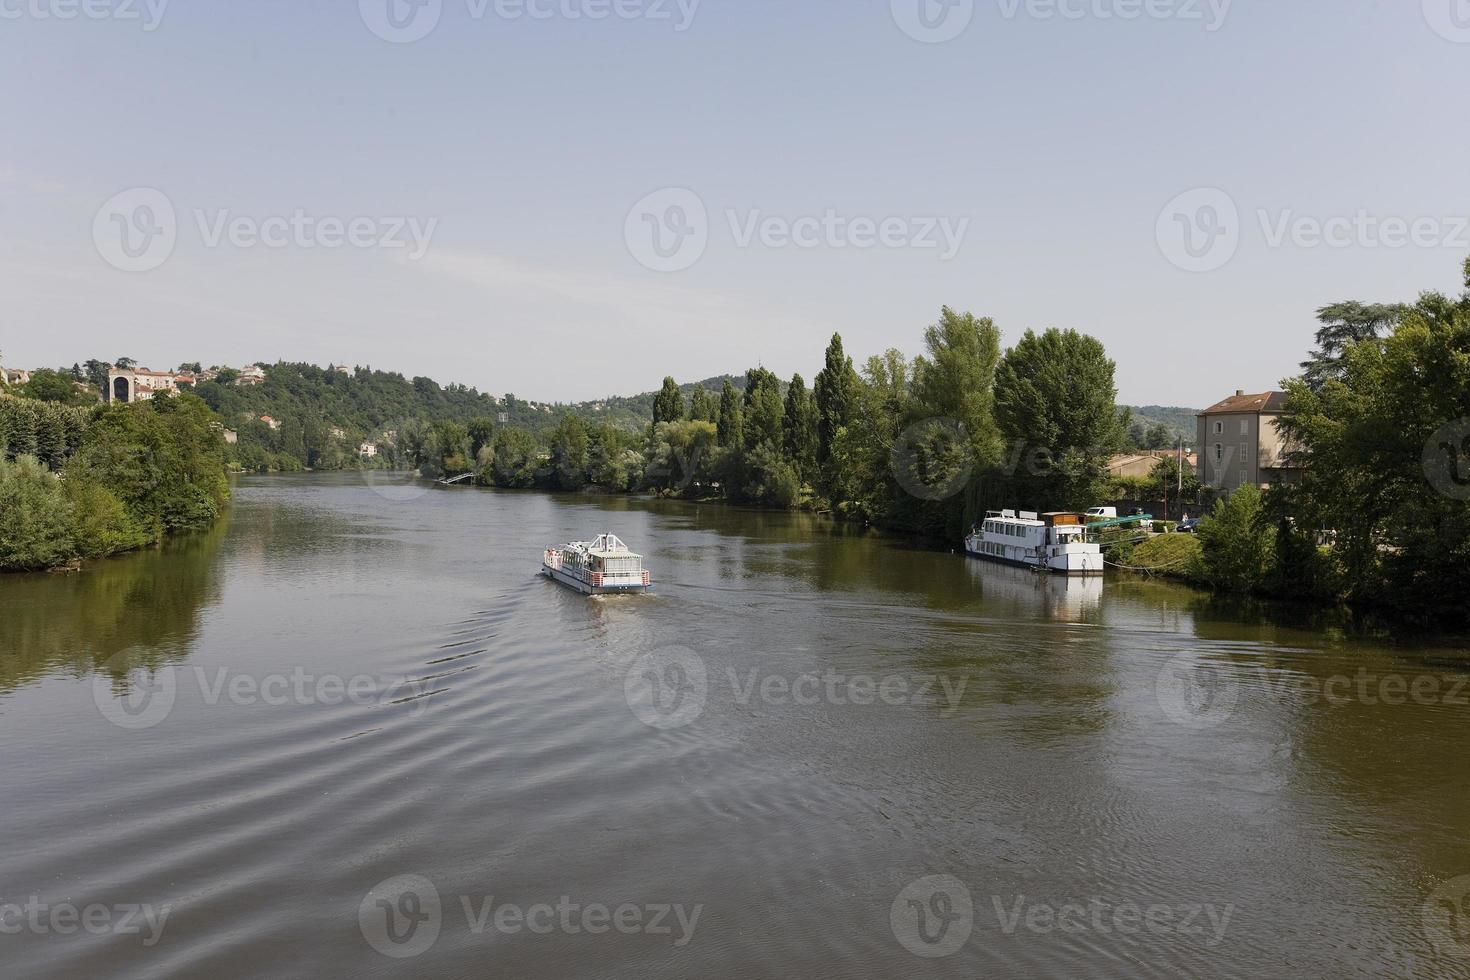 cruzeiro casa-barco no rio le lot na frança foto